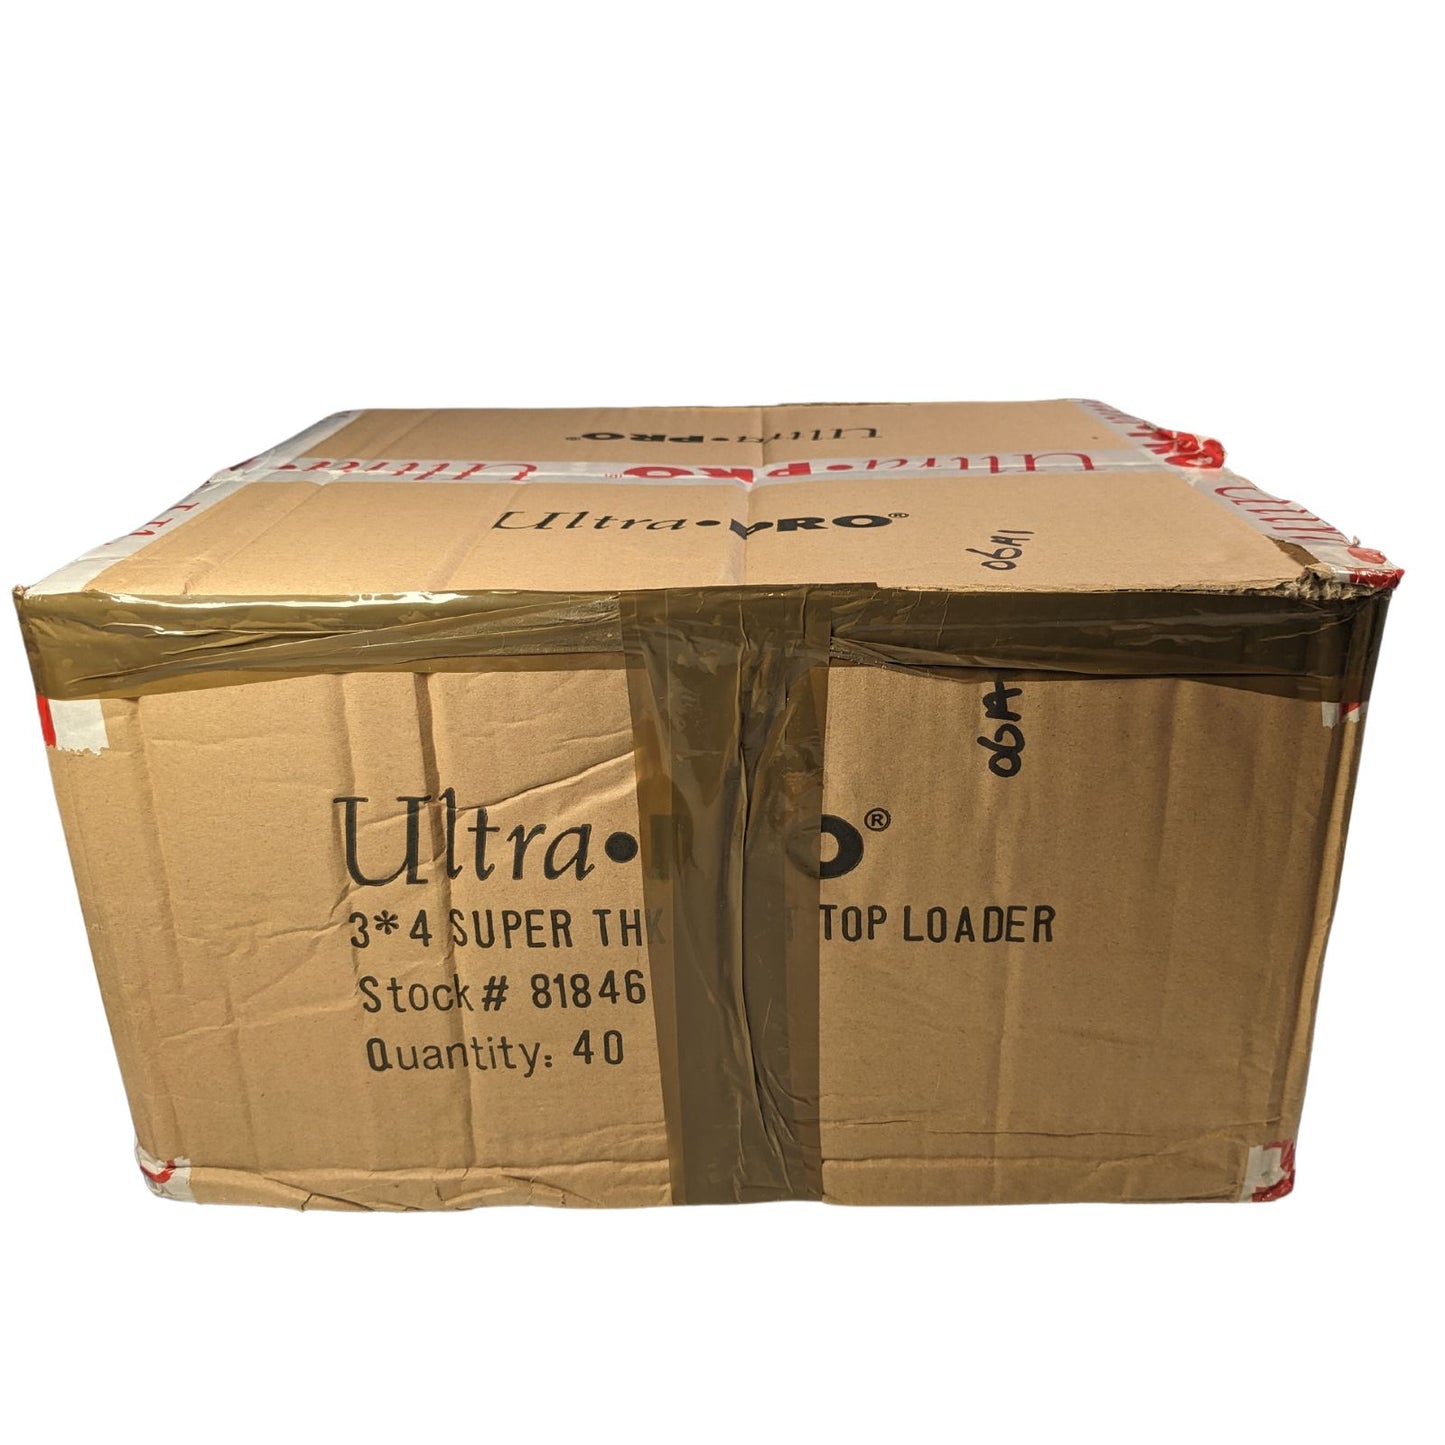 100pt Ultra Pro Toploaders Sealed Case of 40 Packs (1000 Toploaders)